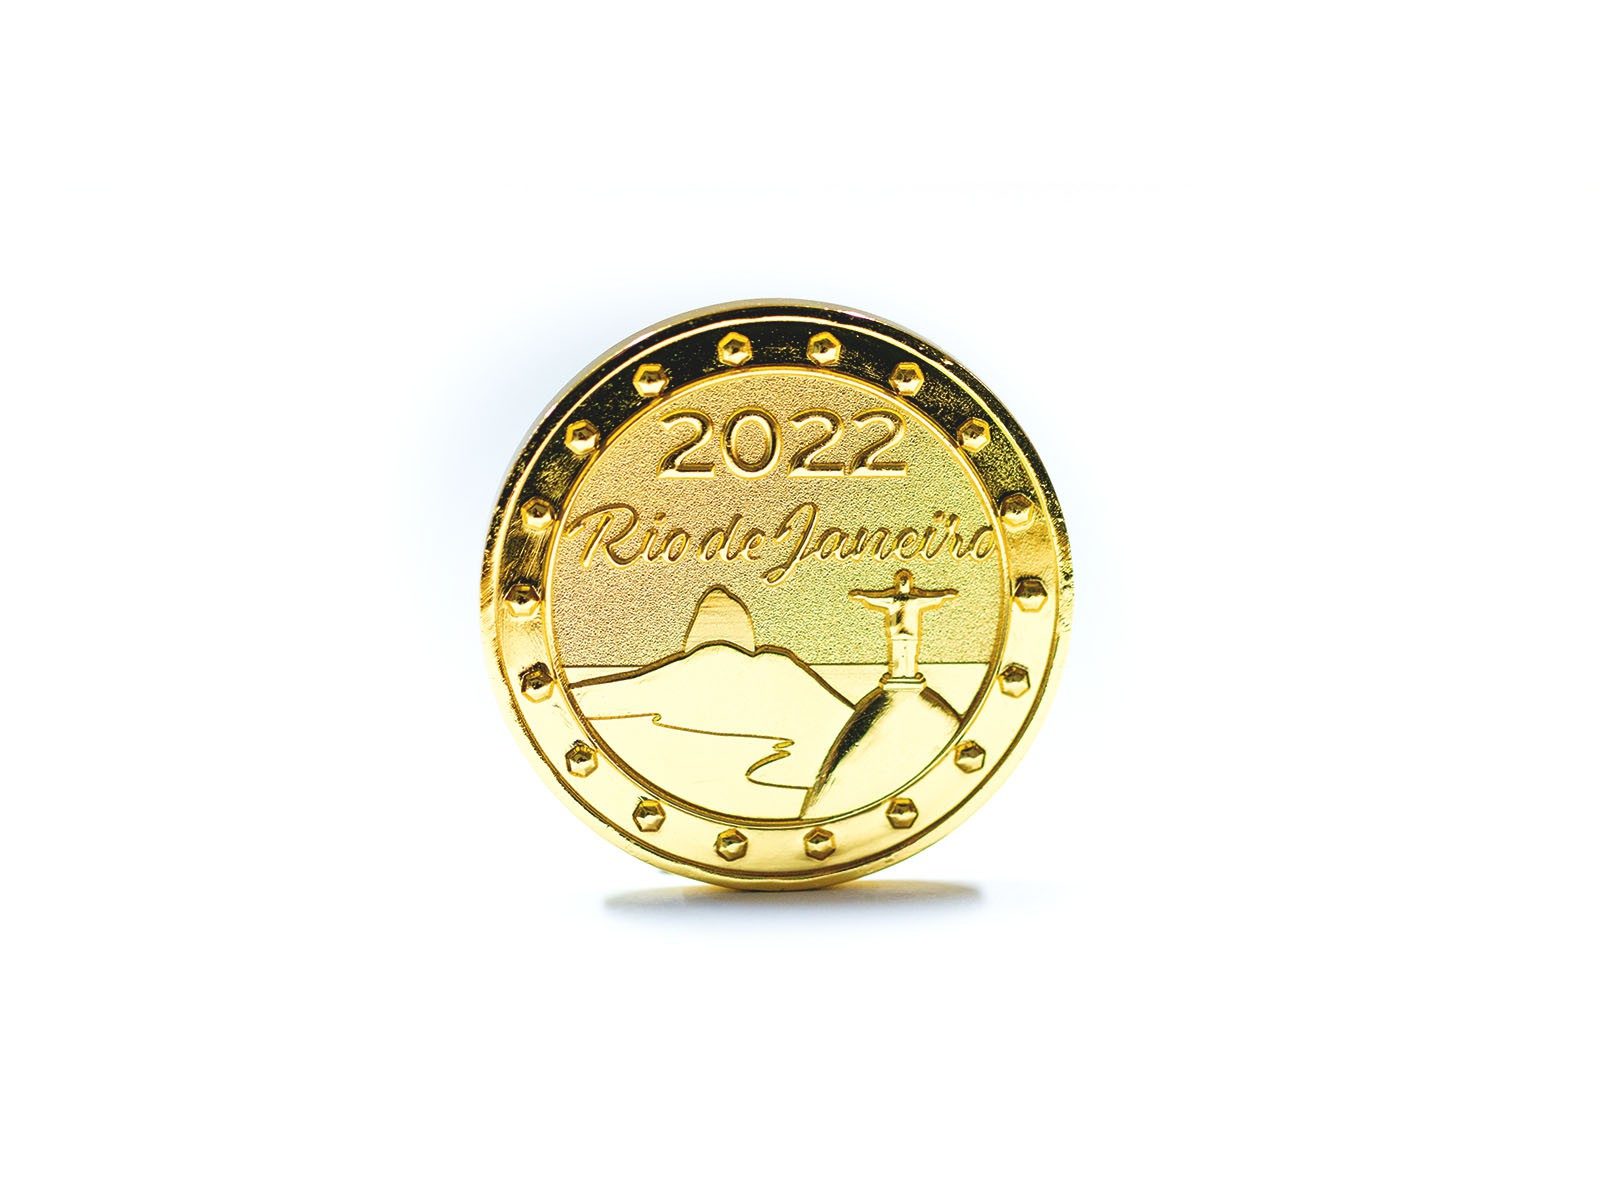 Miniatur Wunderland Münze 2022 "Rio de Janeiro"